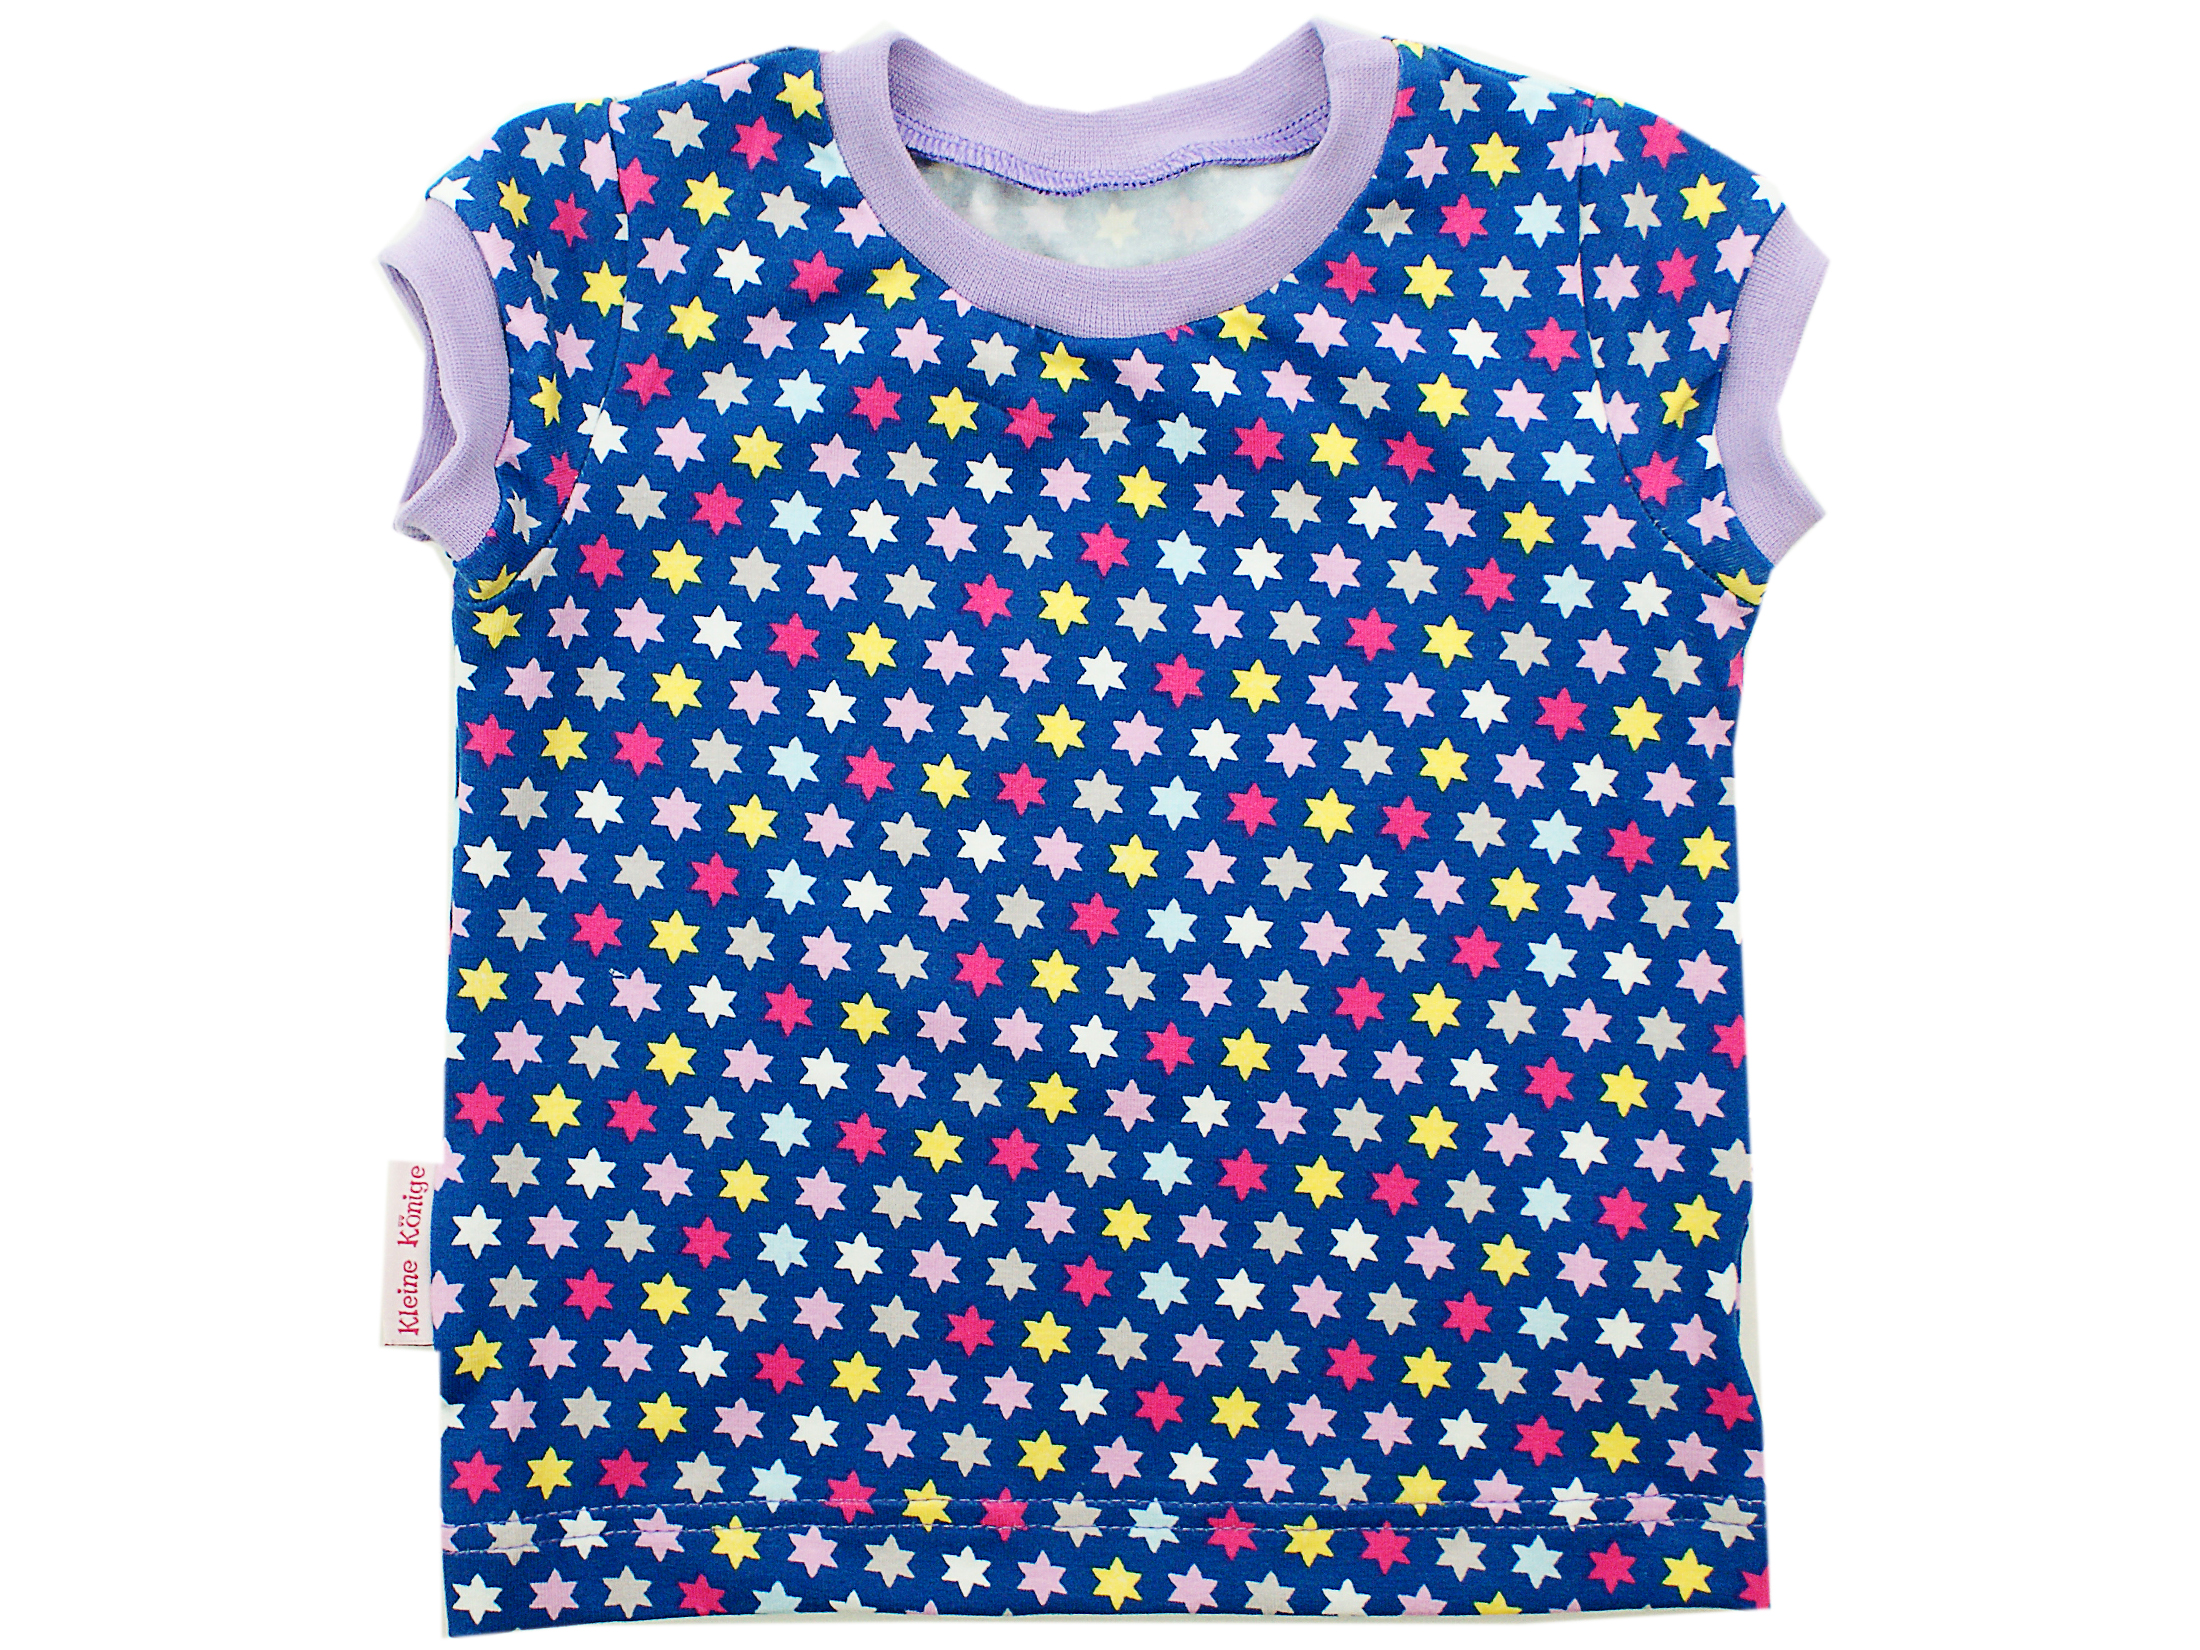  Kinder T-Shirt "Bunte Sterne" flieder in 74 bis 92